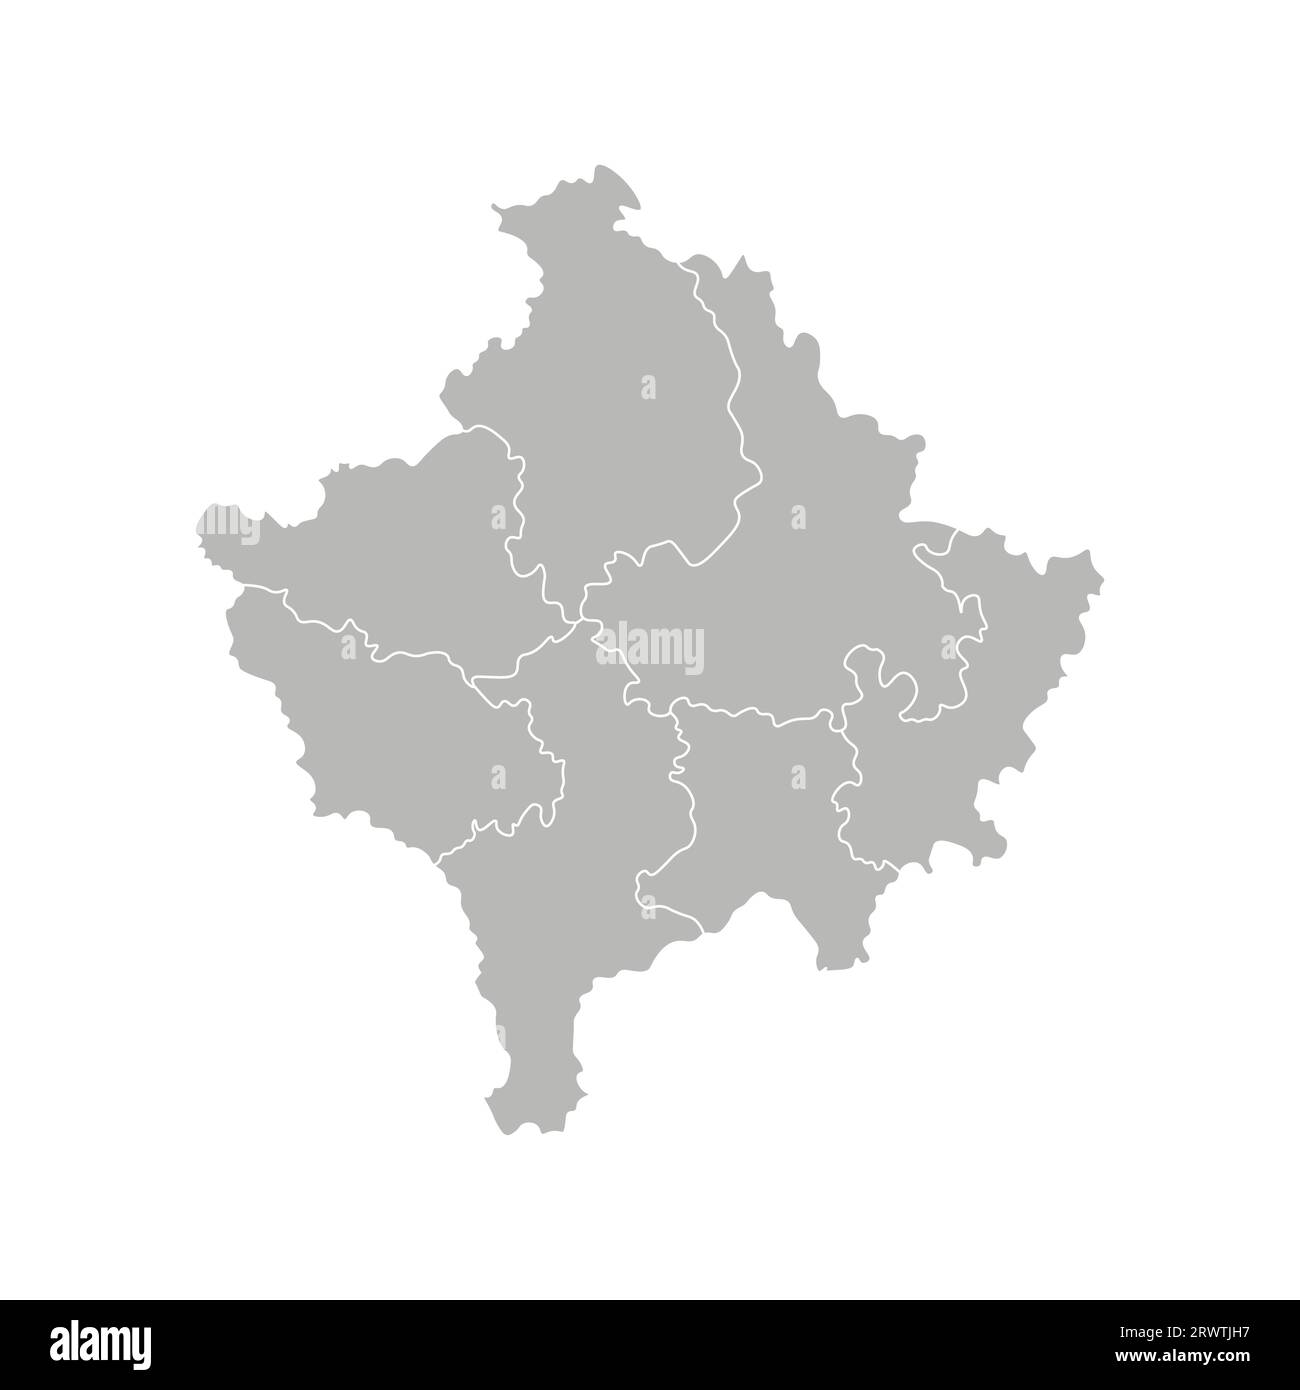 Illustrazione vettoriale isolata della mappa amministrativa semplificata del Kosovo. Confini dei distretti. Silhouette grigie. Contorno bianco. Illustrazione Vettoriale